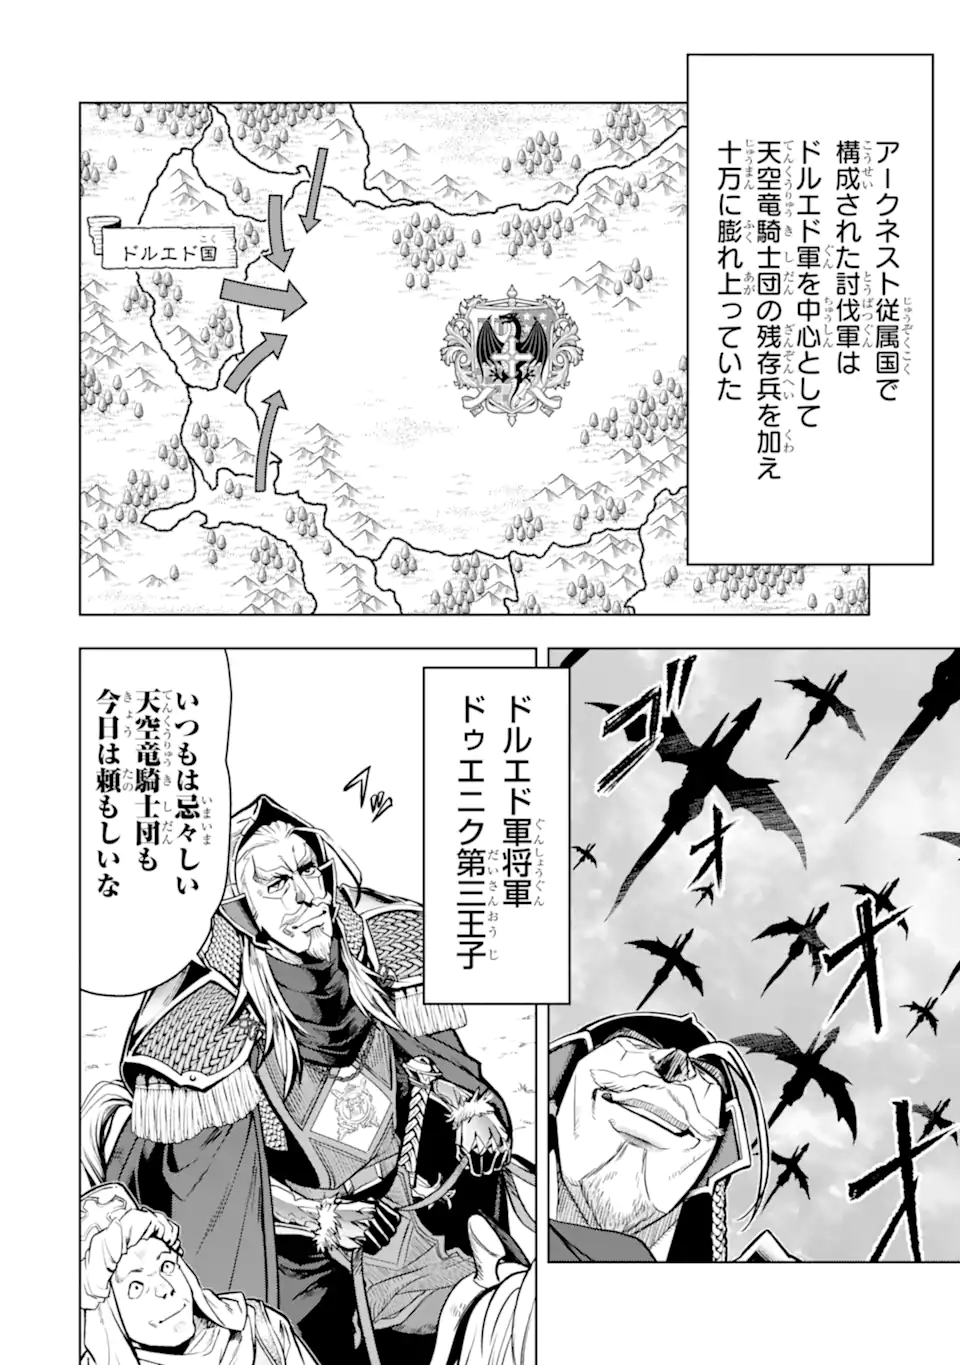 Koko wa Ore ni Makasete Saki ni Ike to Itte kara 10 Nen ga Tattara Densetsu ni Natteita - Chapter 37.4 - Page 10